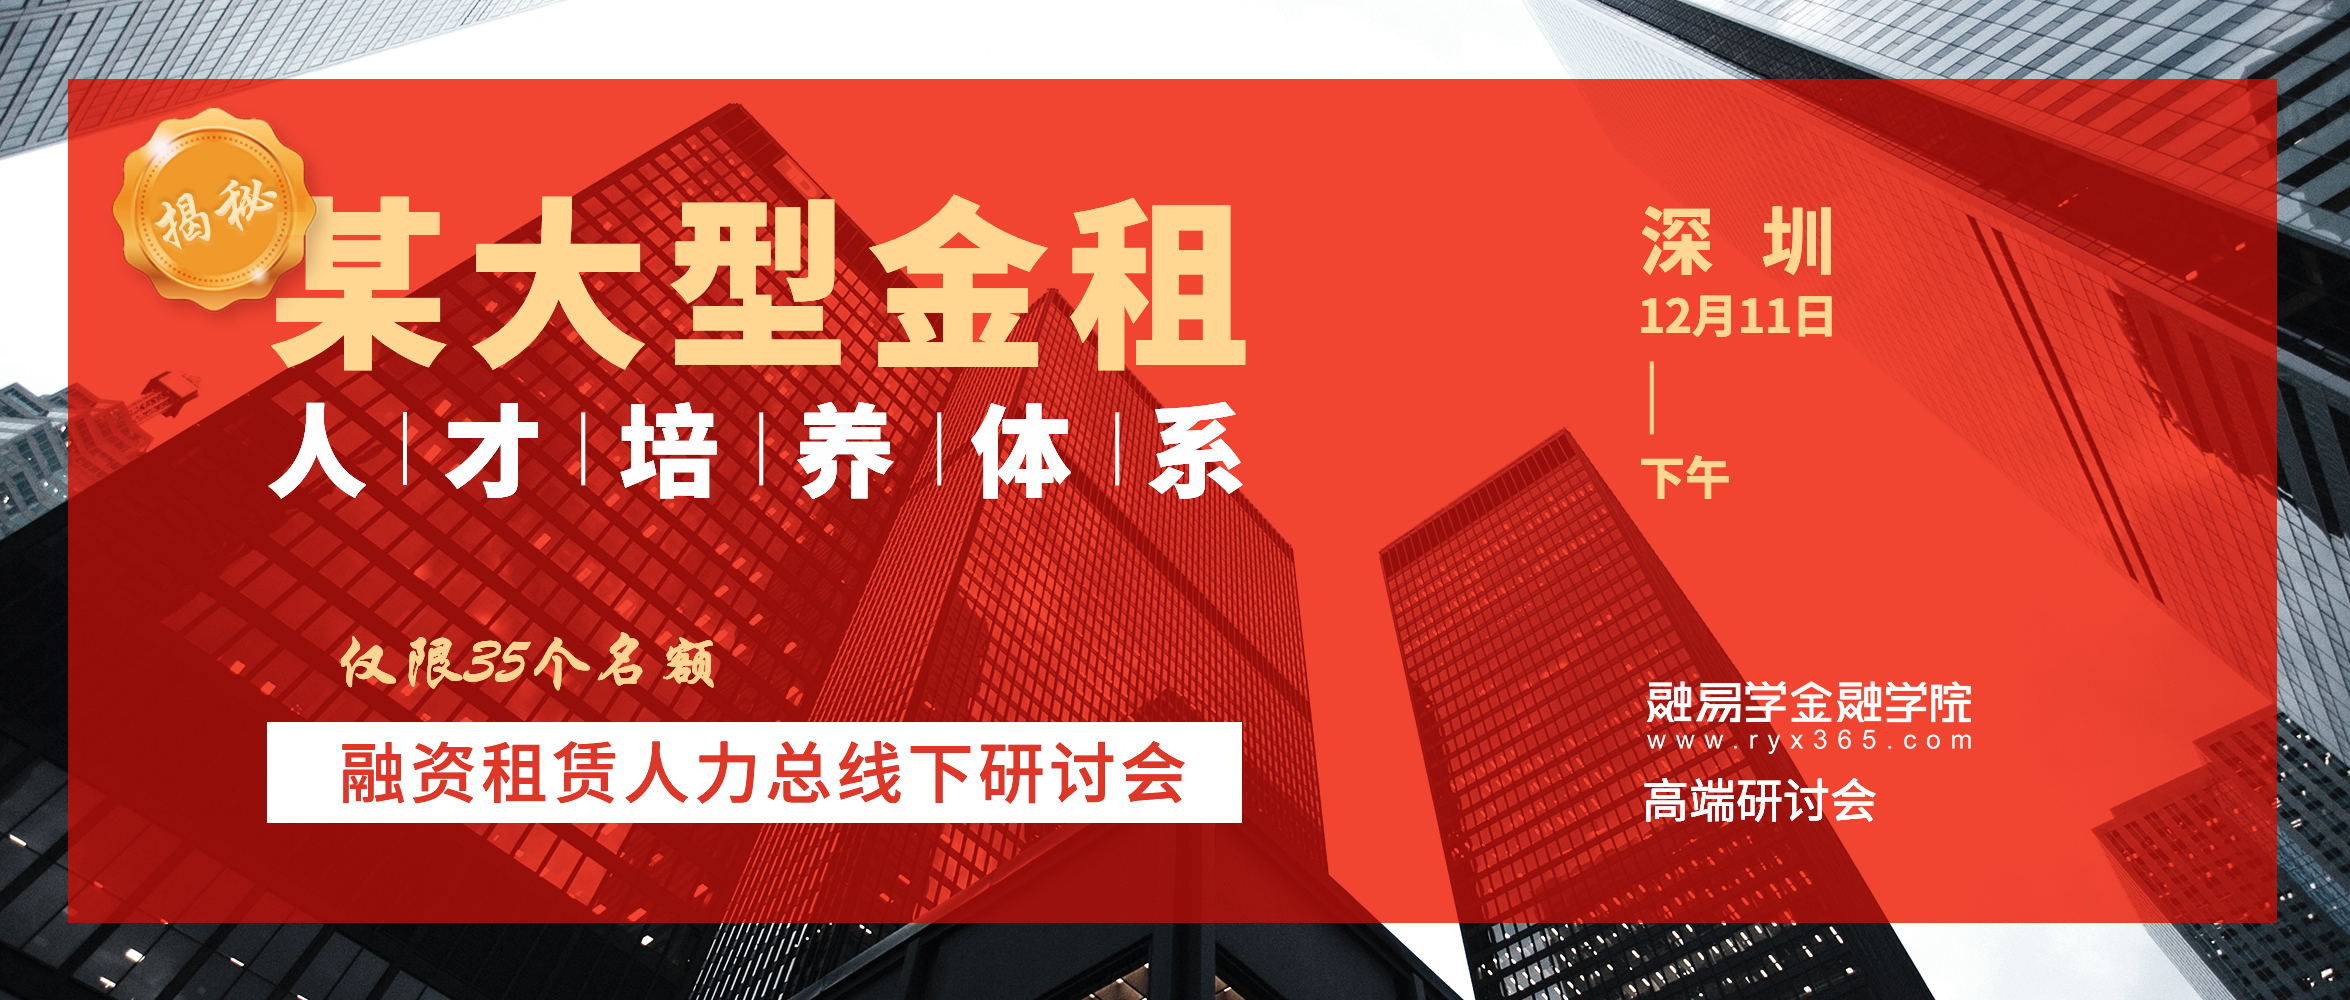 中国融资租赁人力资源管理价值创造研讨会